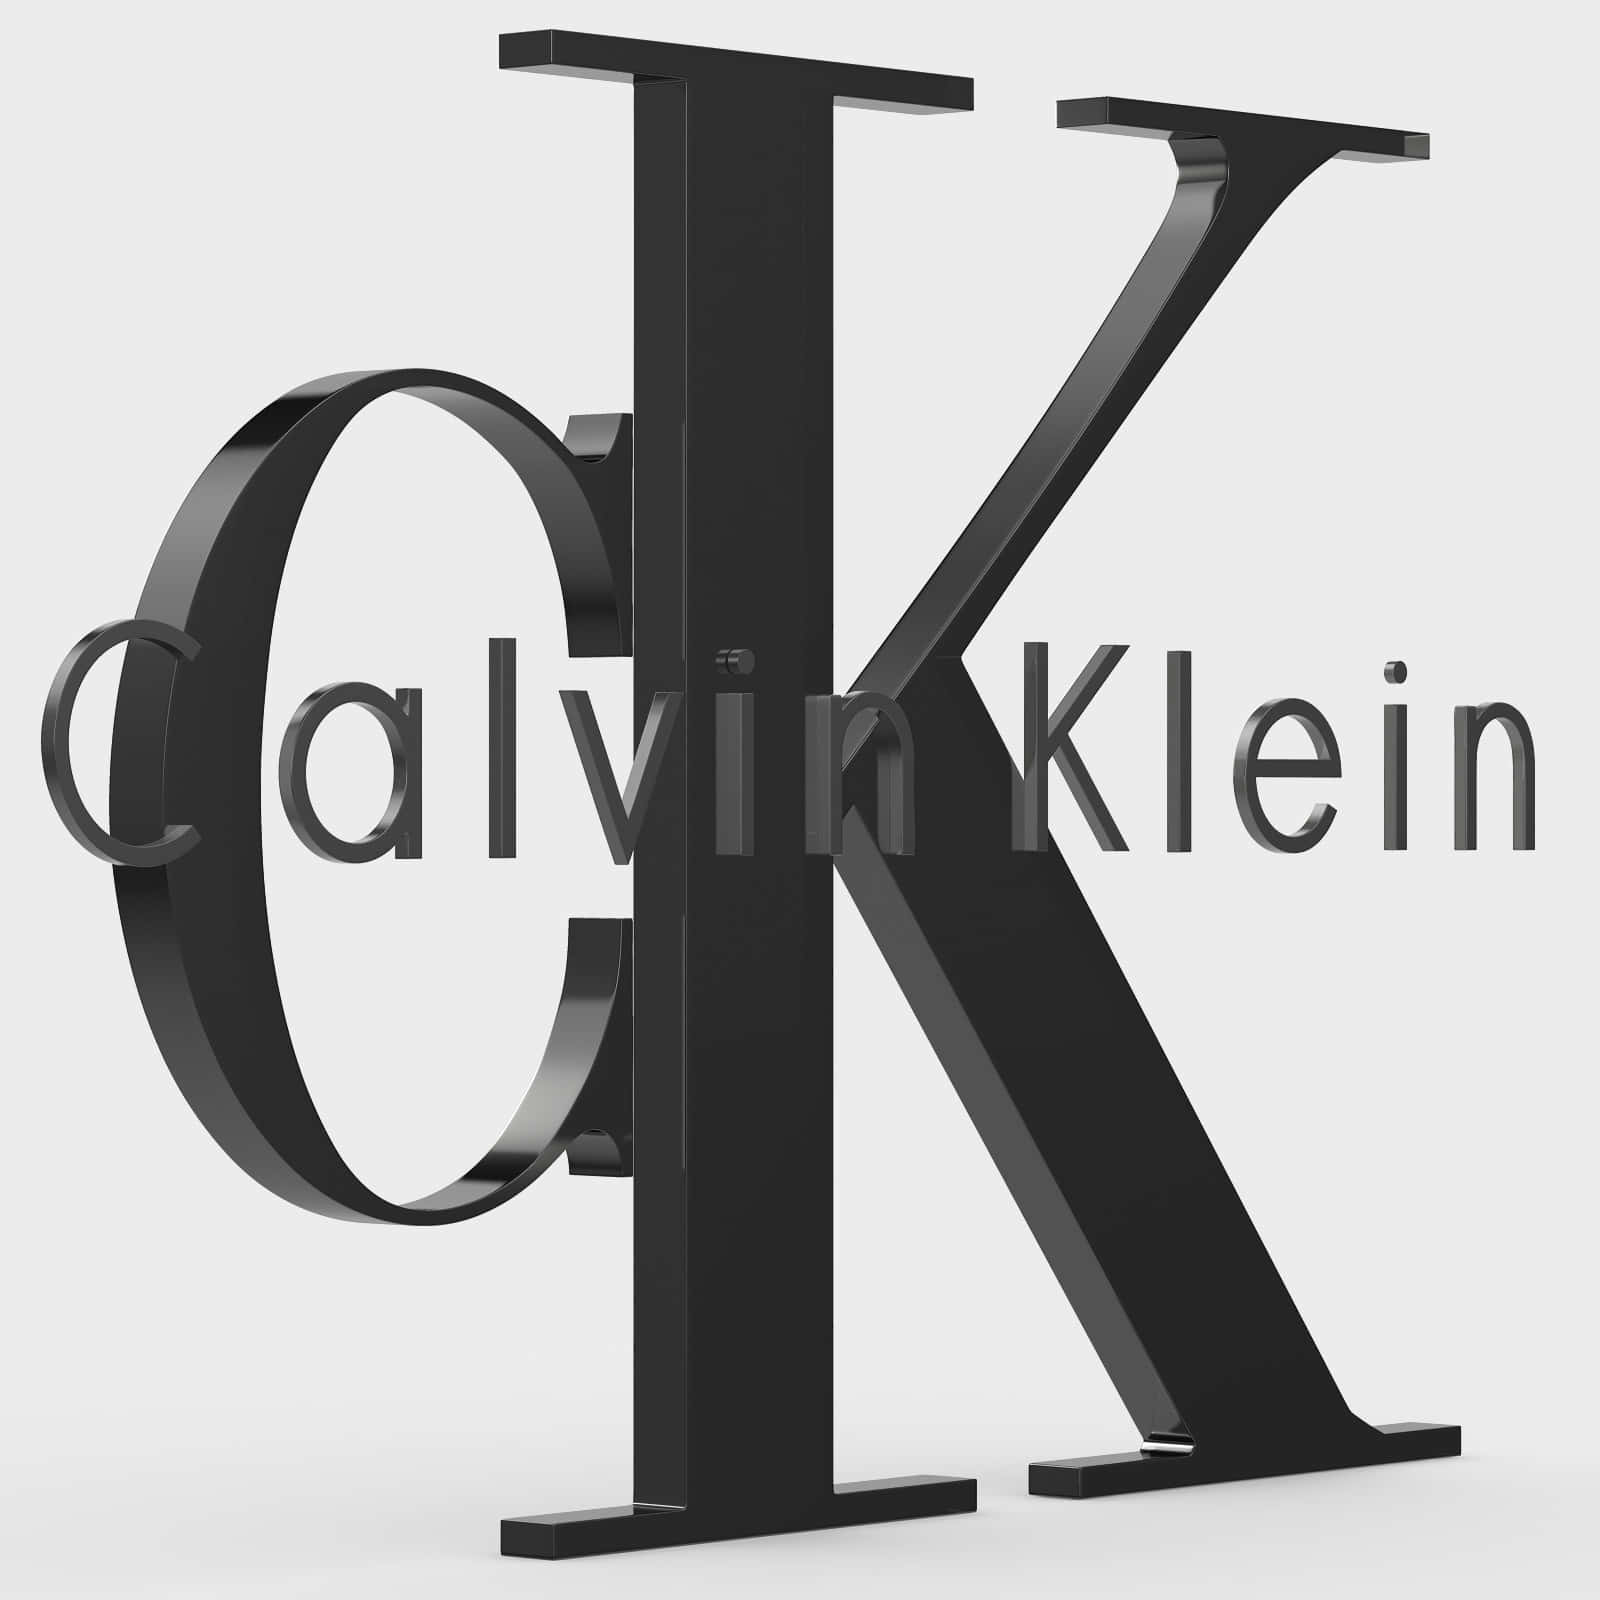 Make a bold statement in Calvin Klein